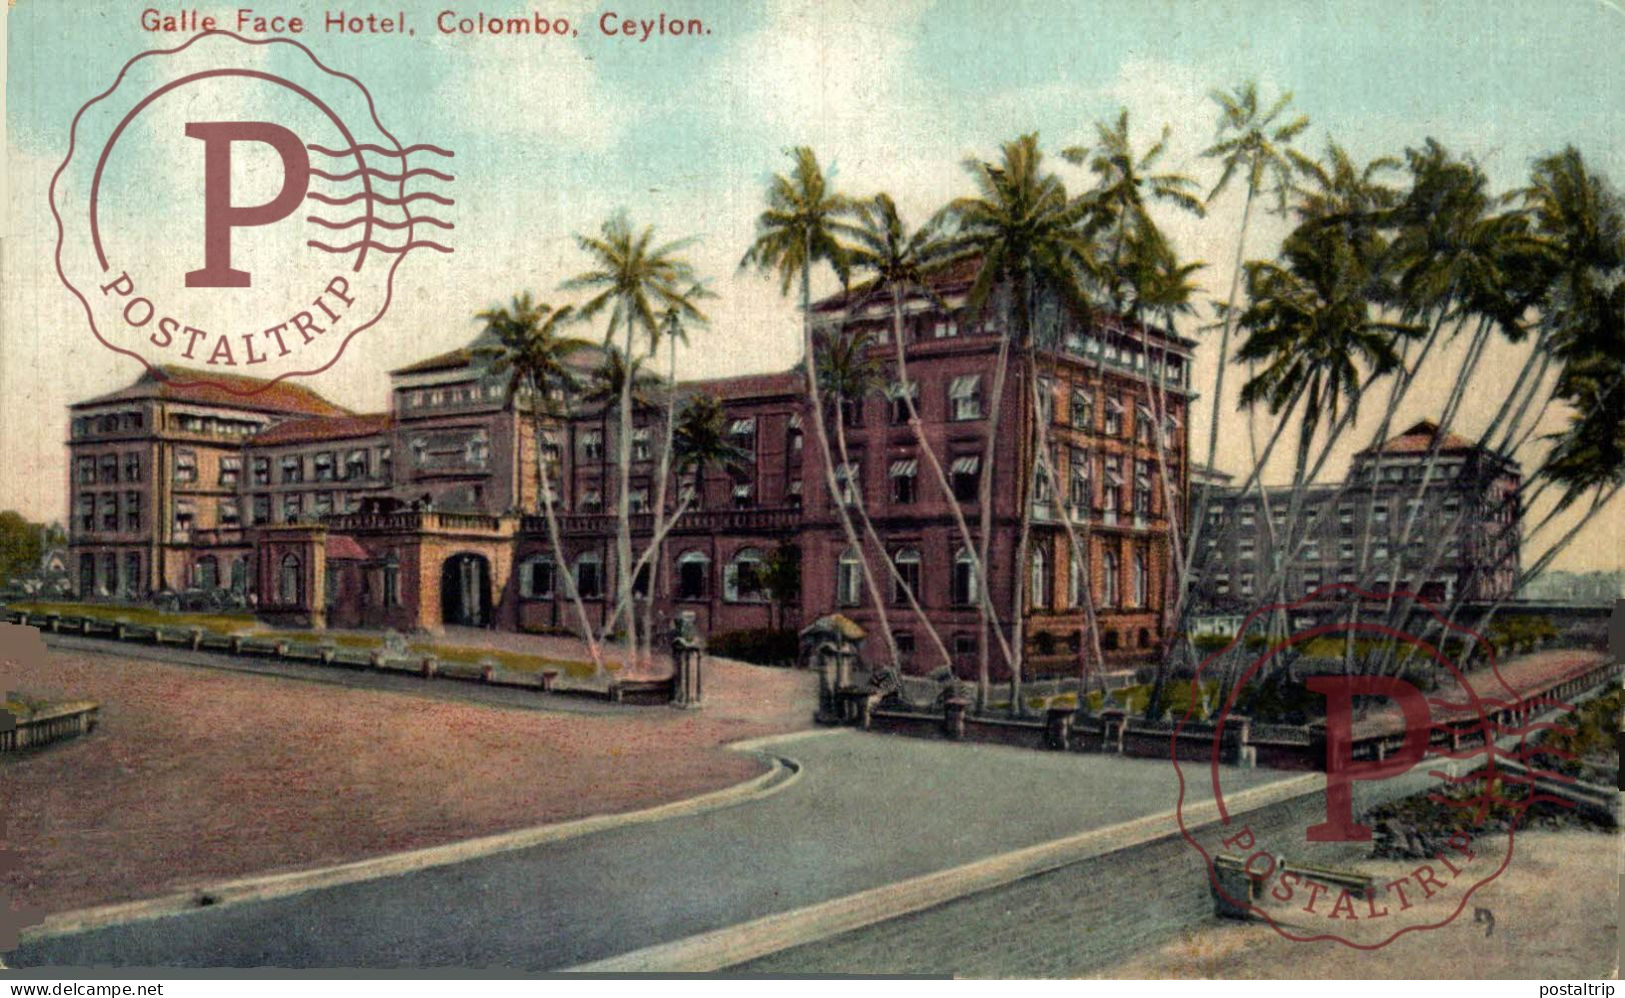 SRI LANKA CEYLON - CEYLAN. GALLE FACE HOTEL. COLOMBO. - Sri Lanka (Ceylon)